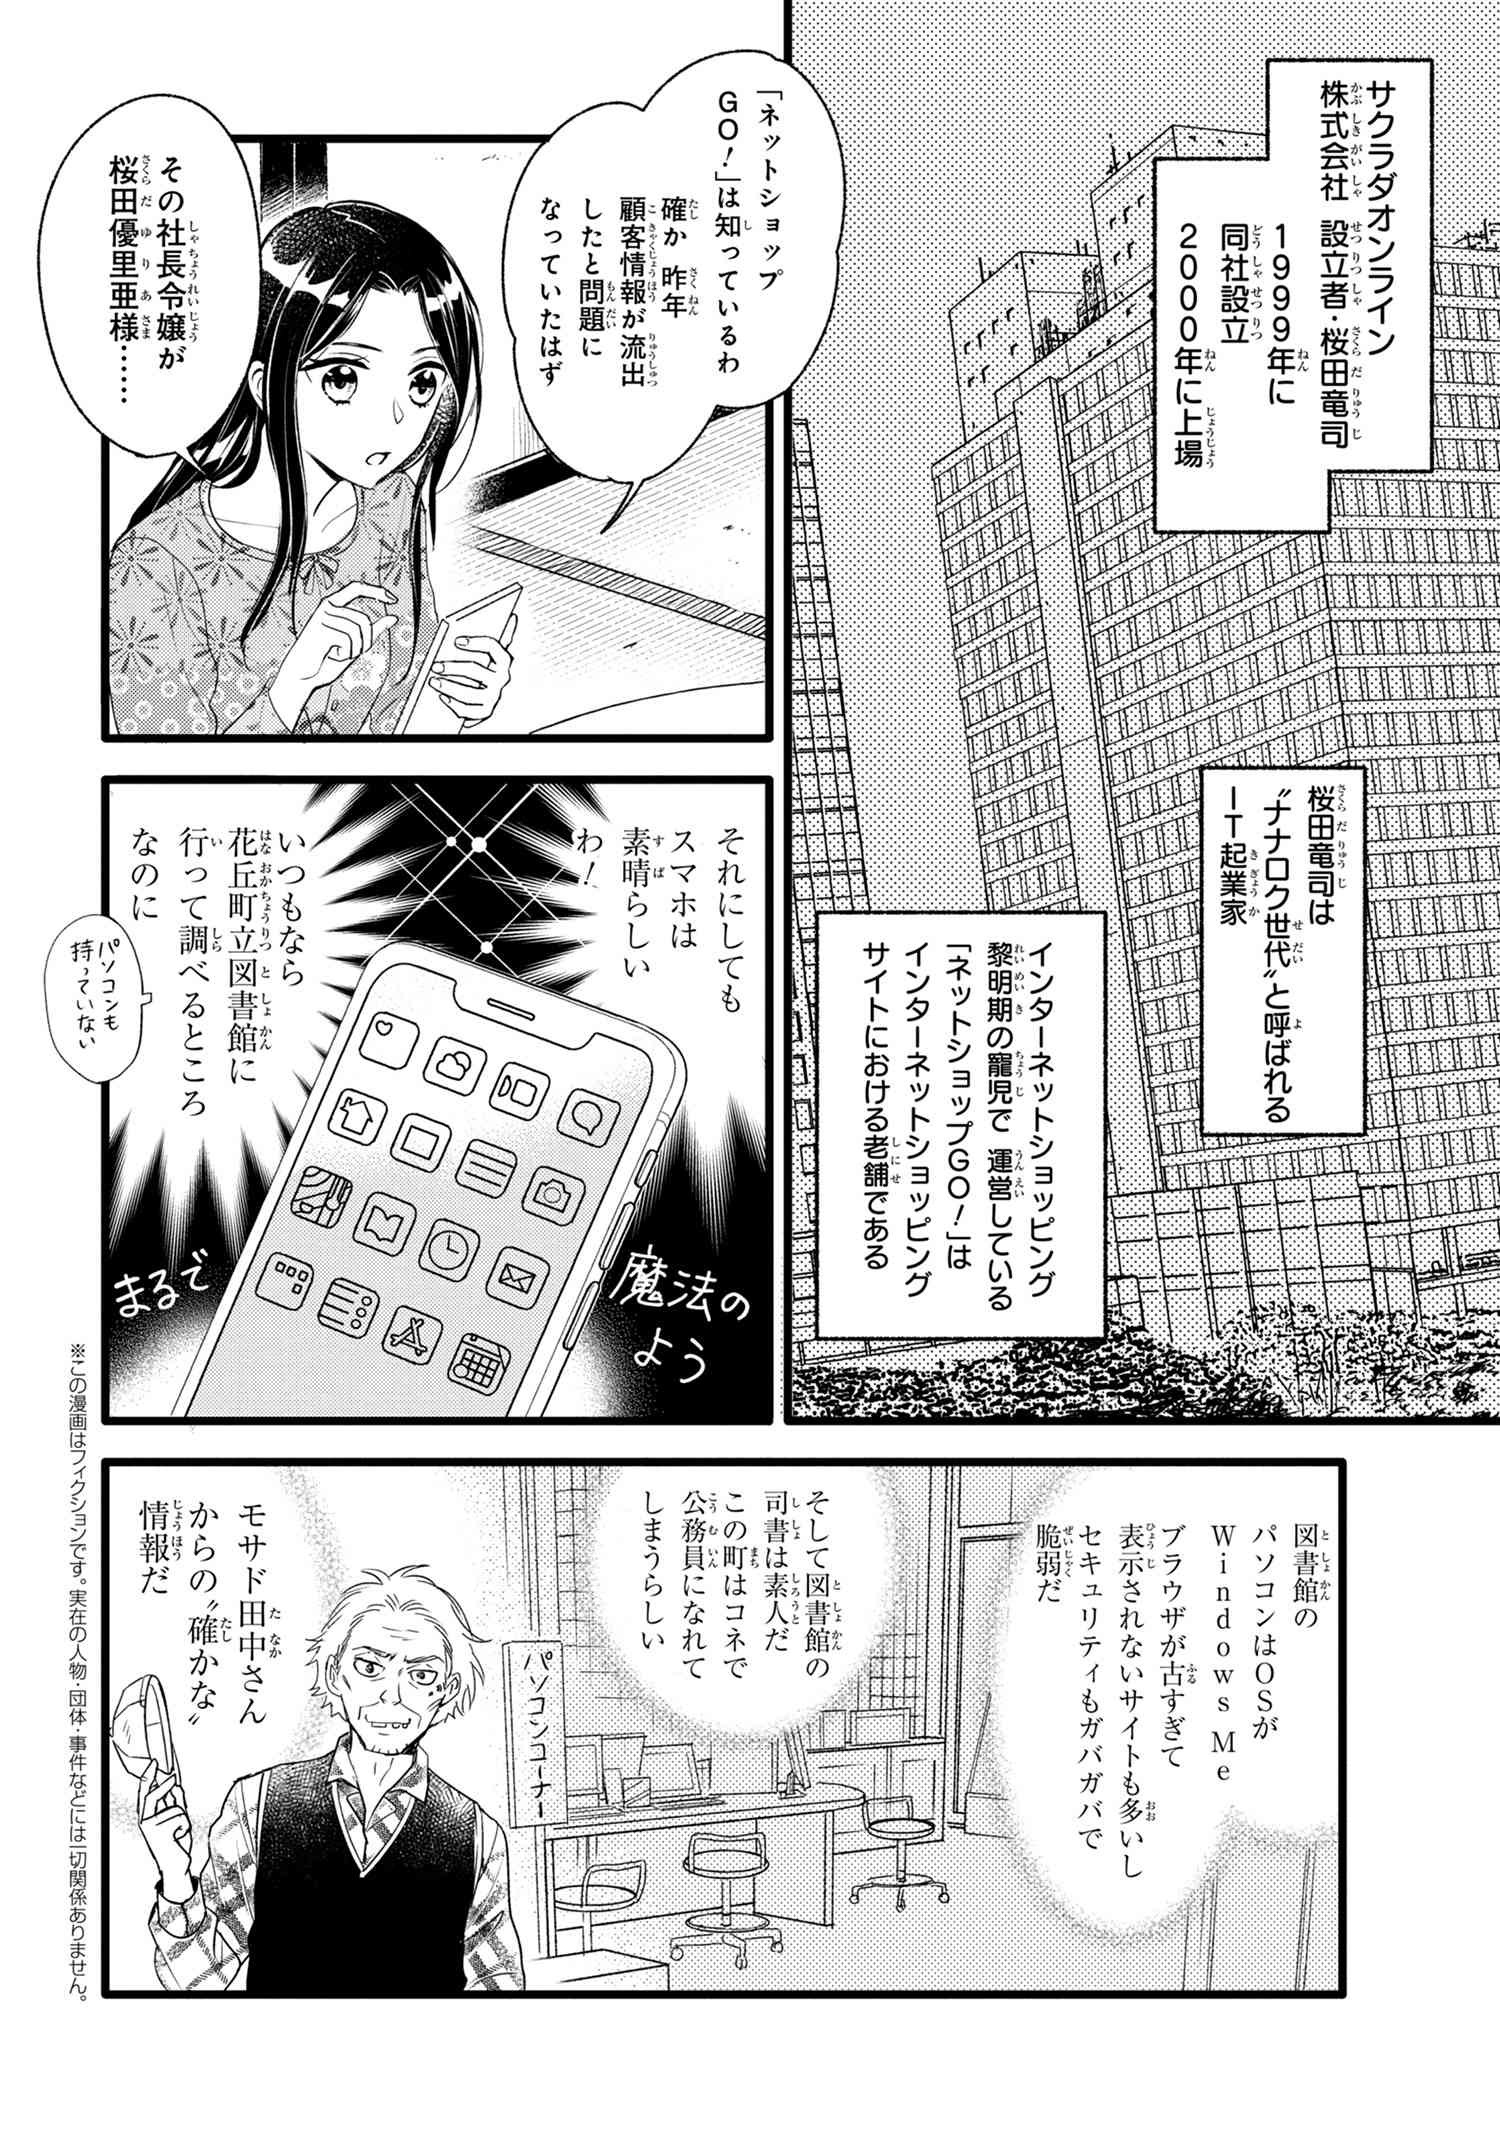 Reiko no Fuugi Akuyaku Reijou to Yobarete imasu ga, tada no Binbou Musume desu - Chapter 6-3 - Page 2